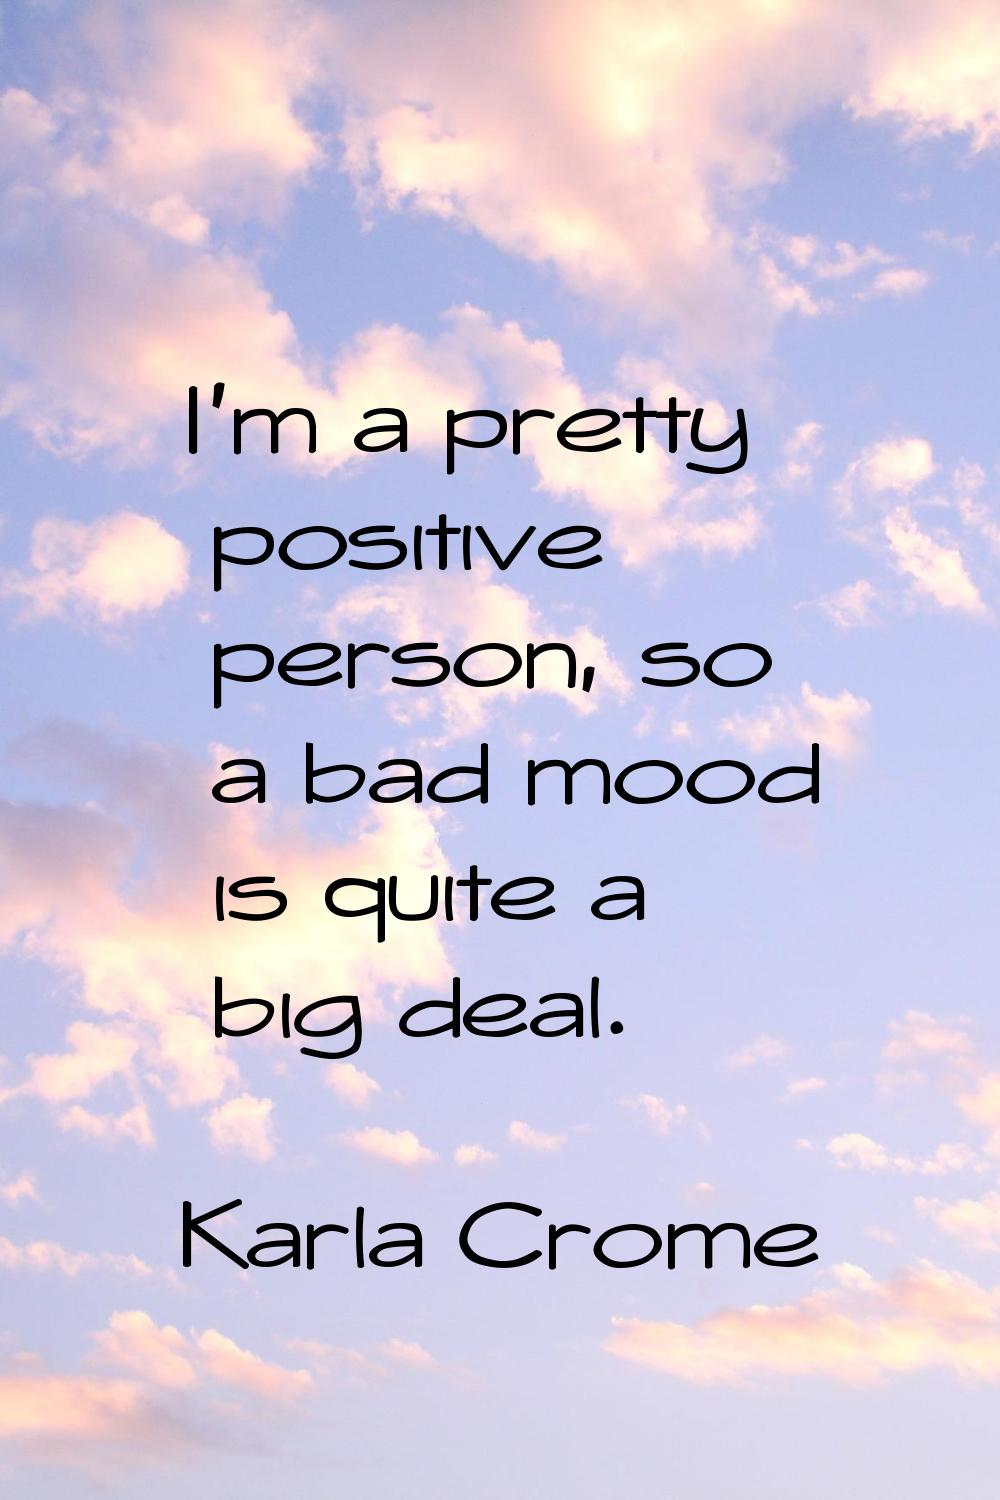 I'm a pretty positive person, so a bad mood is quite a big deal.